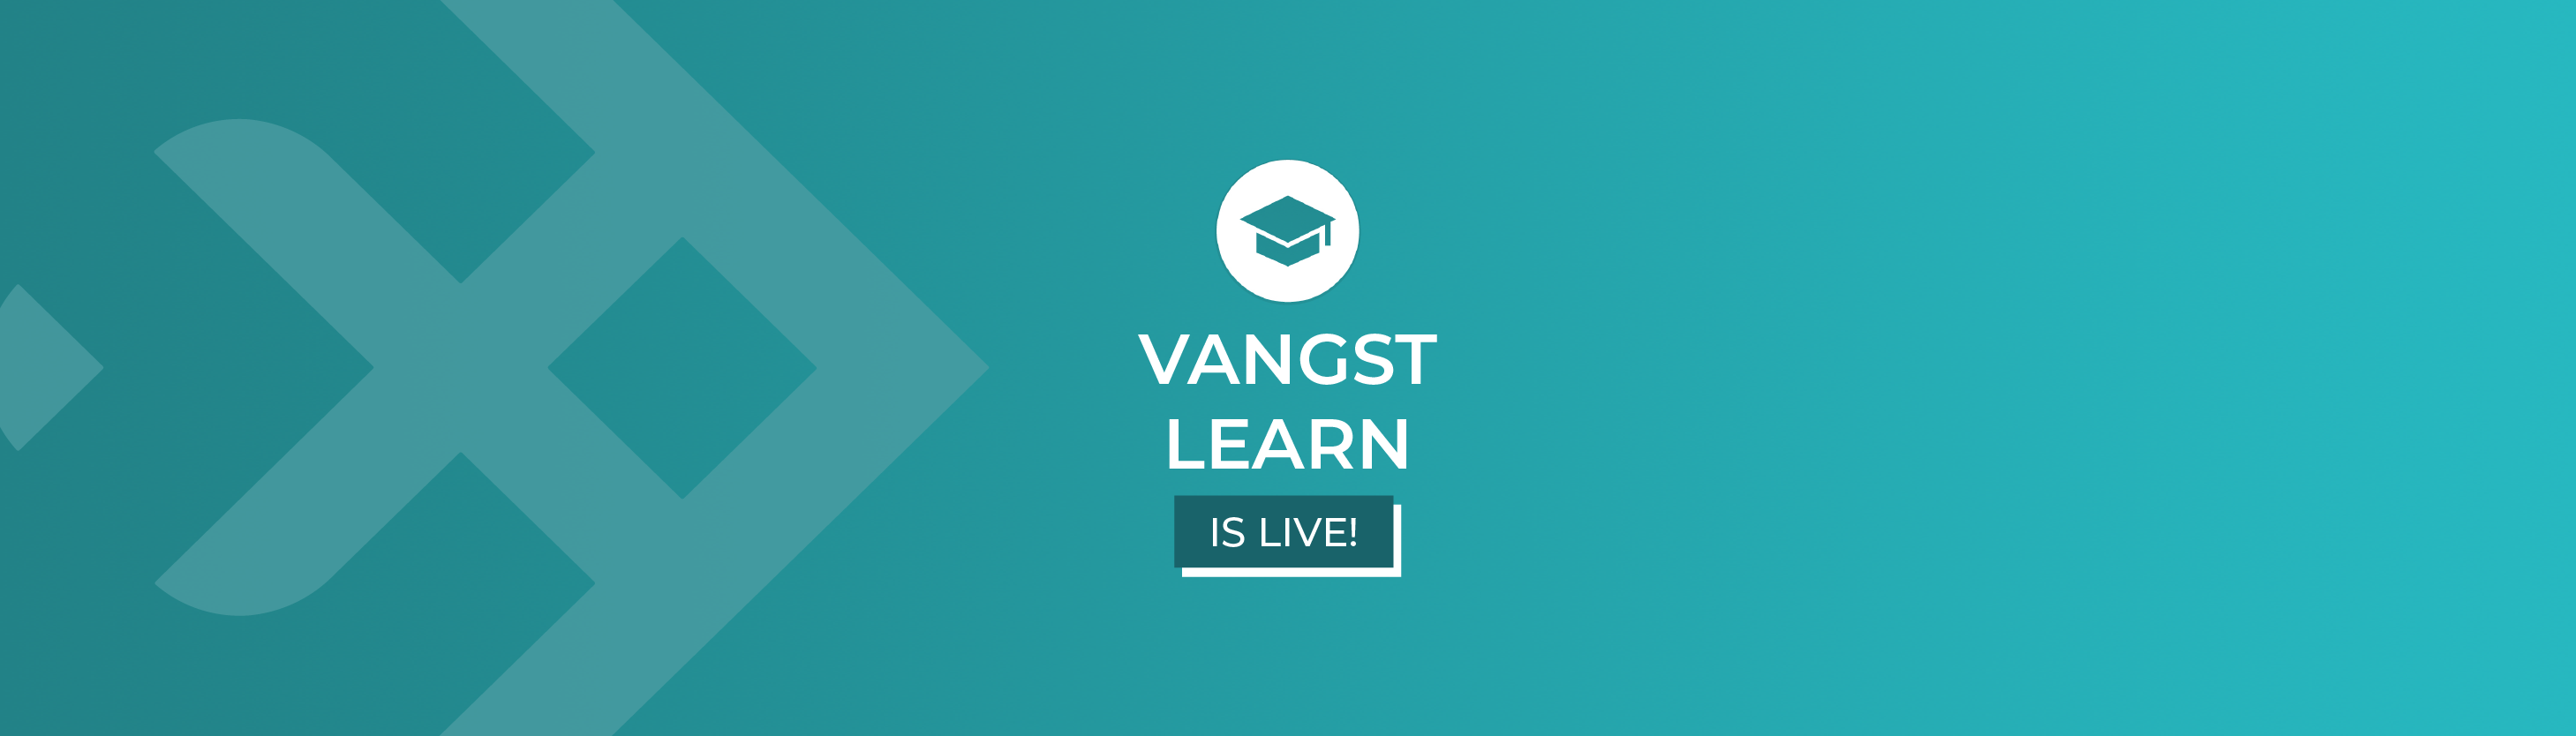 Vangst Learn: Empowering Job Seekers & Businesses Alike